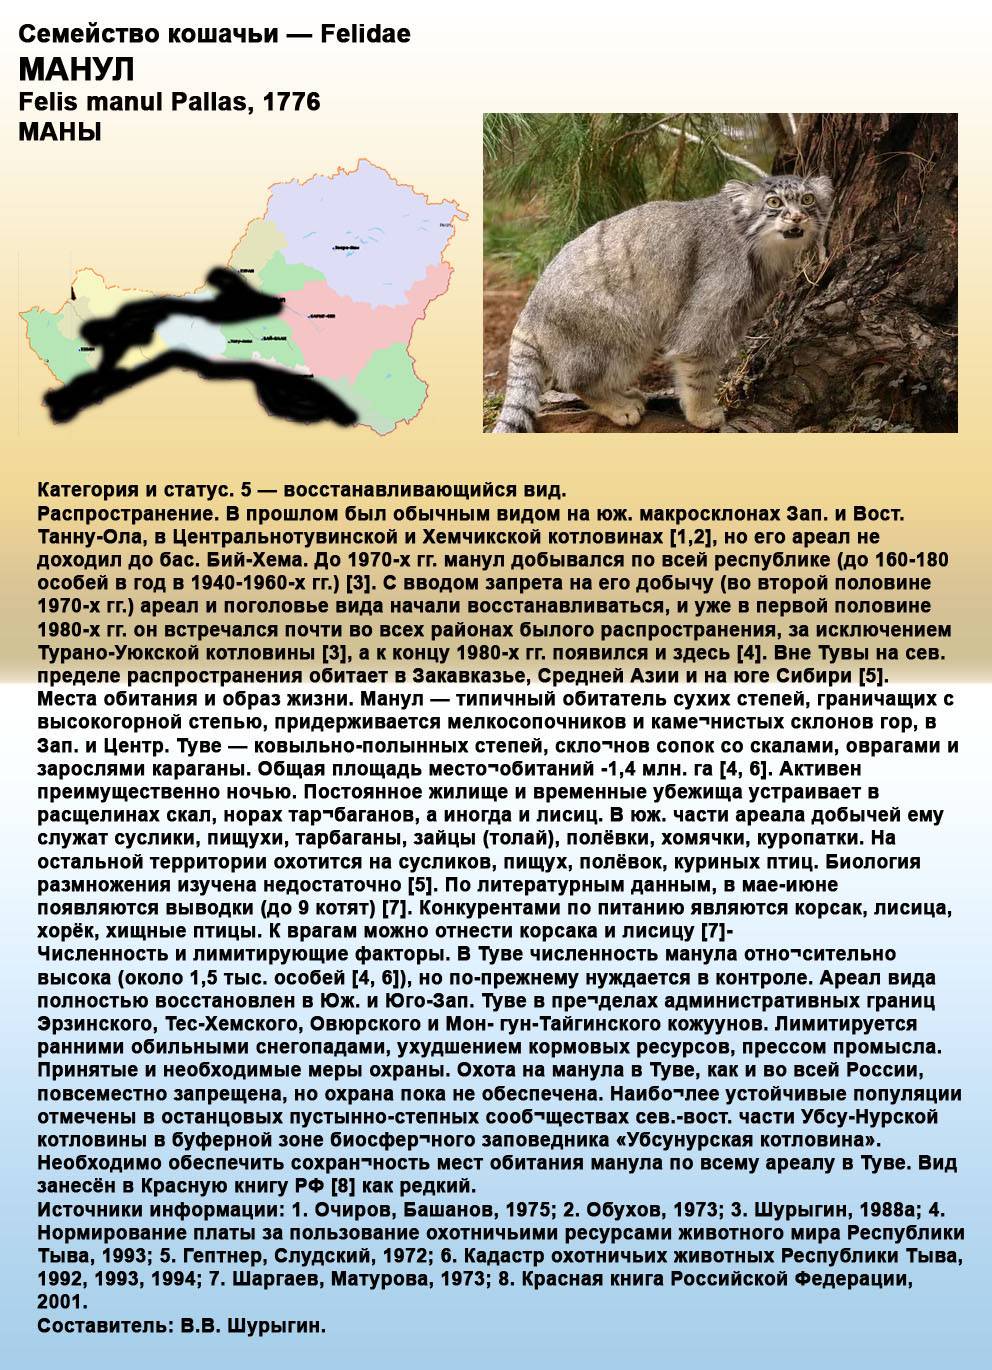 Пампасская кошка: образ жизни и среда обитания, характер, размножение и основные угрозы, фото